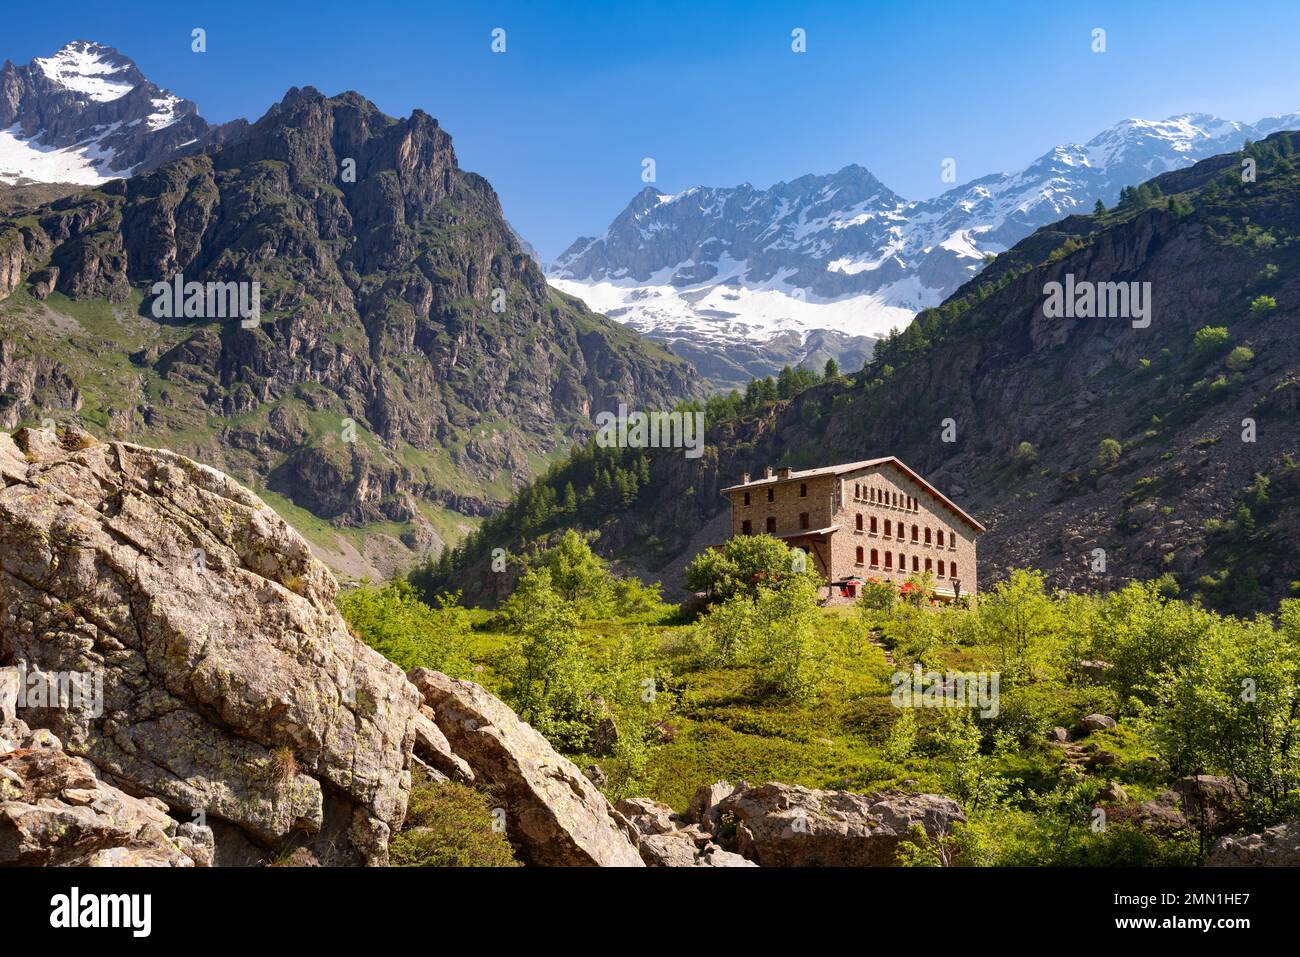 Le refuge de Gioberney au coeur du massif du parc national des Ecrins fin printemps-été. Vallée de Valgaudemar dans les Hautes-Alpes (Alpes). France Banque D'Images